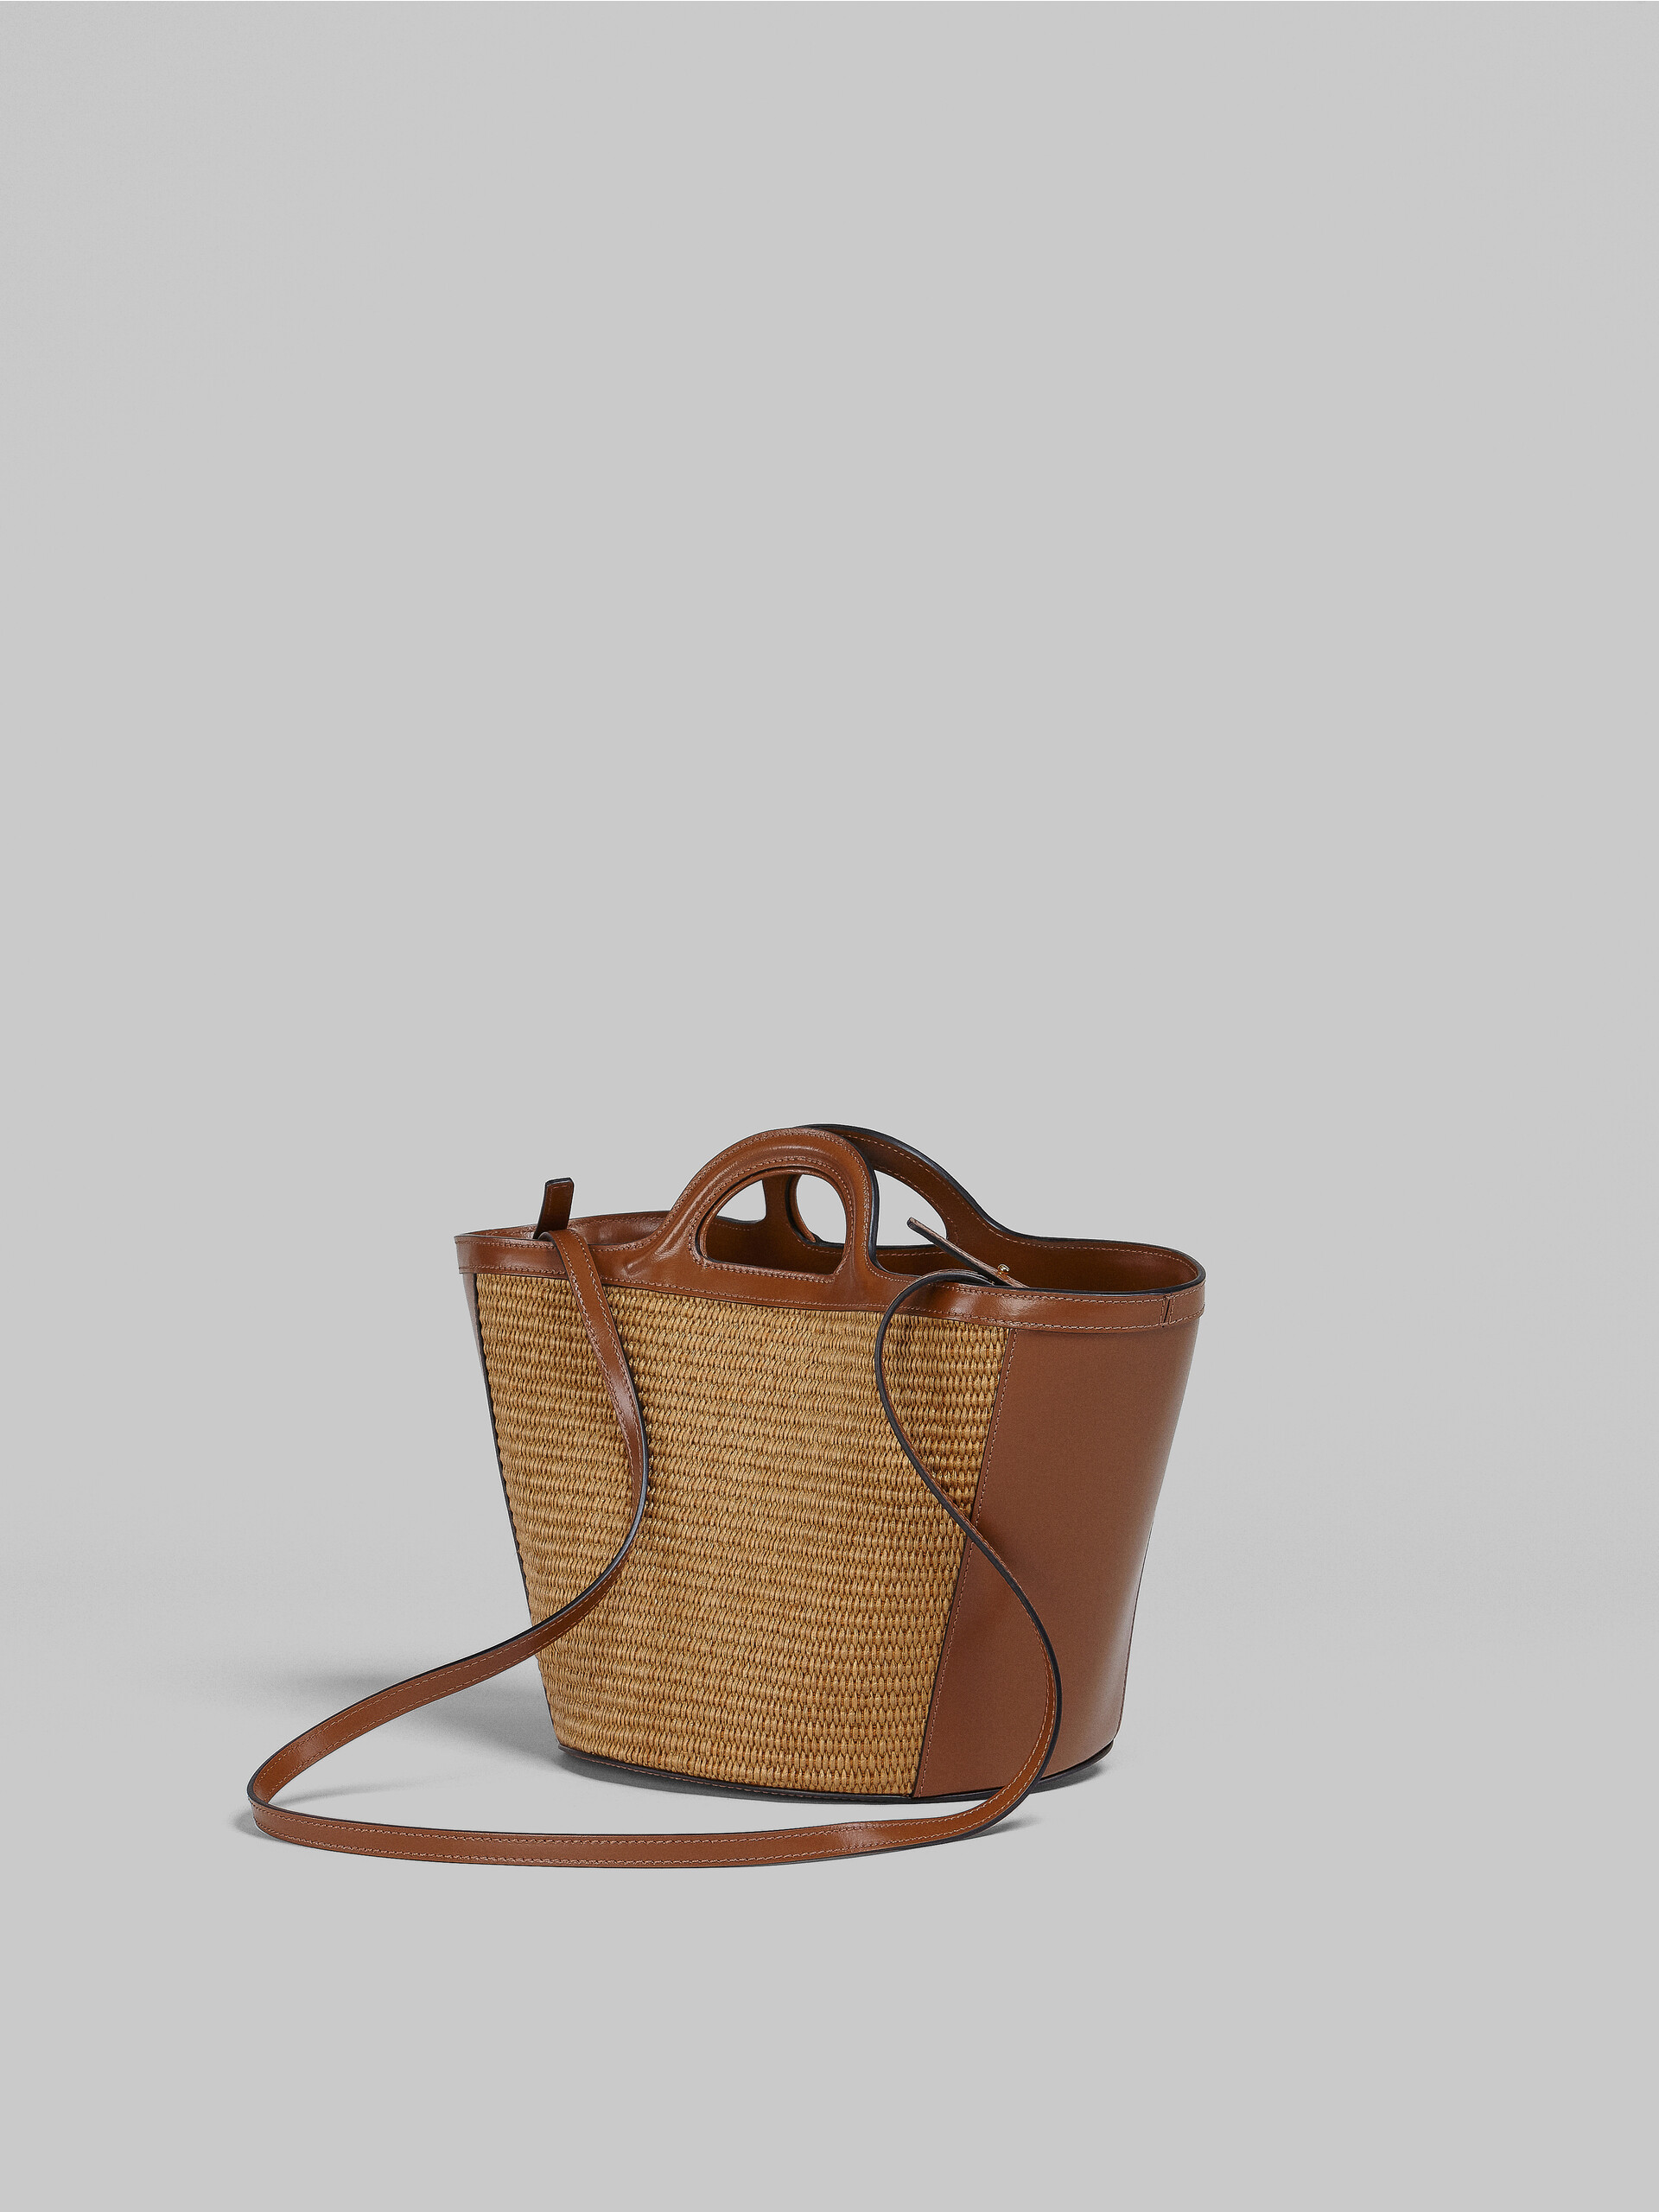 Petit sac Tropicalia en raphia et cuir marron - Sacs à main - Image 3